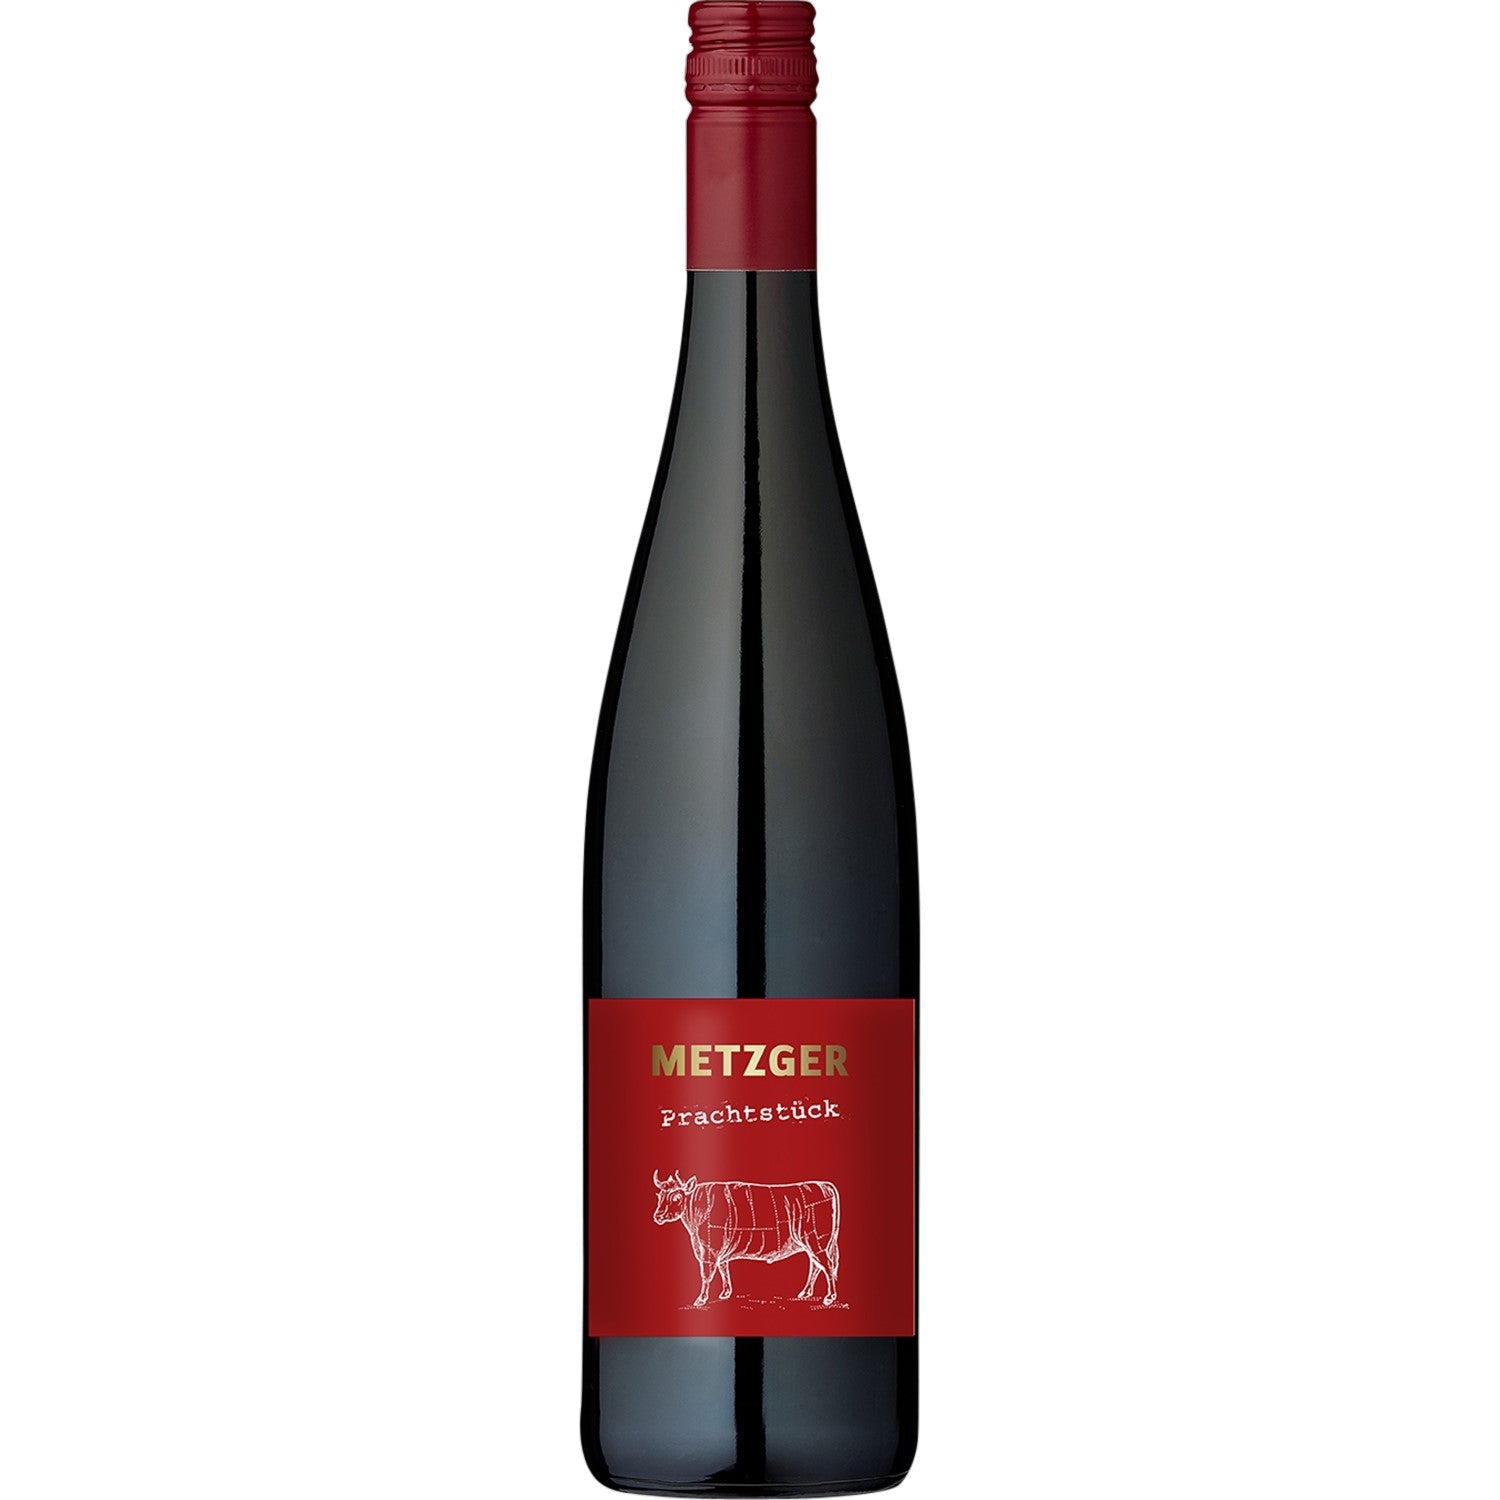 Metzger Prachtstück Cuvée Rotwein Wein trocken KuhbA Deutschland (6 x 0.75l) - Versanel -